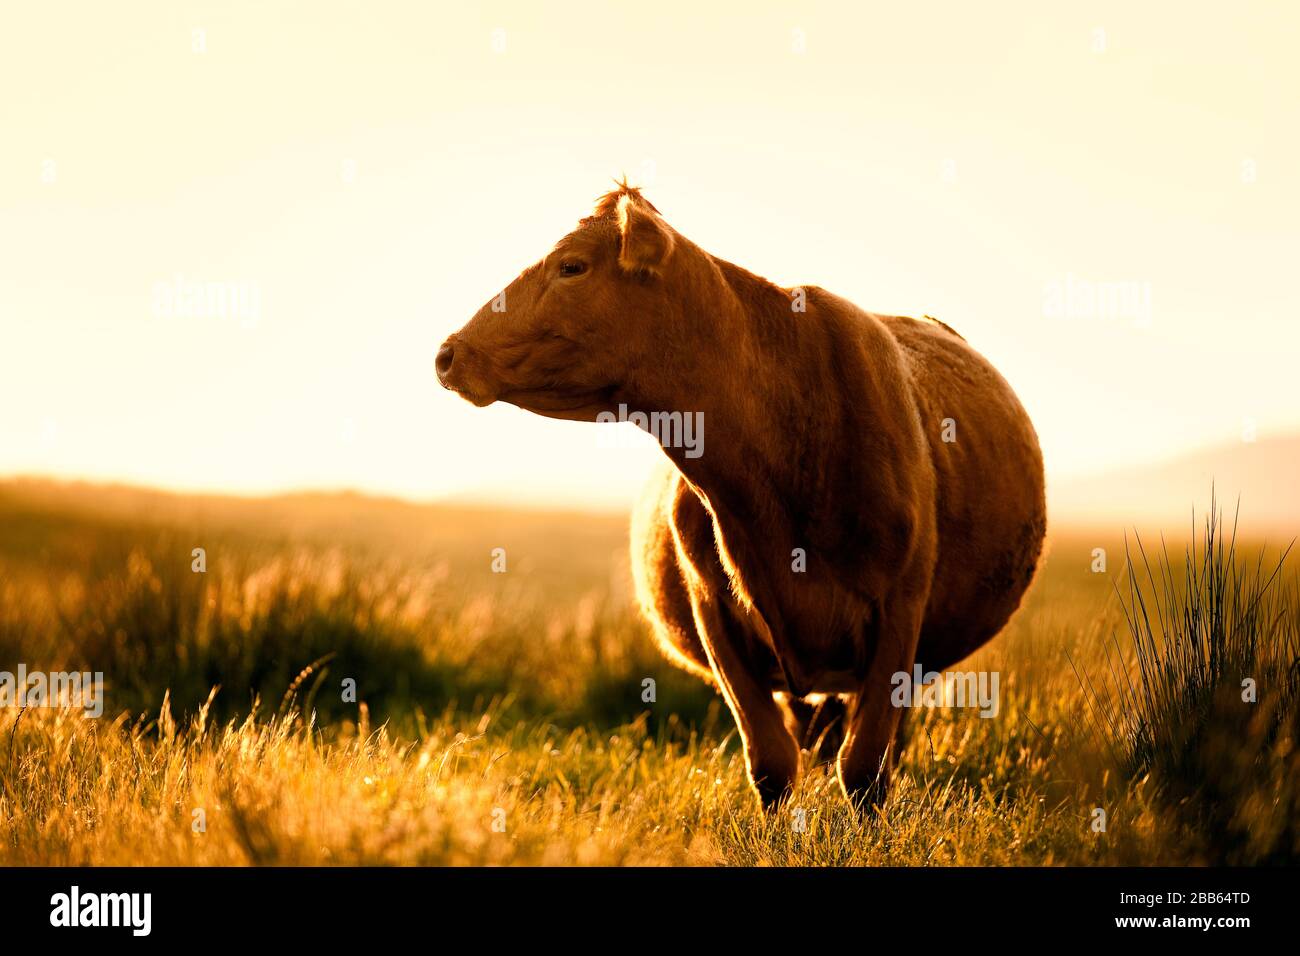 Kuh, die in einem grasigen Feld steht. Stockfoto